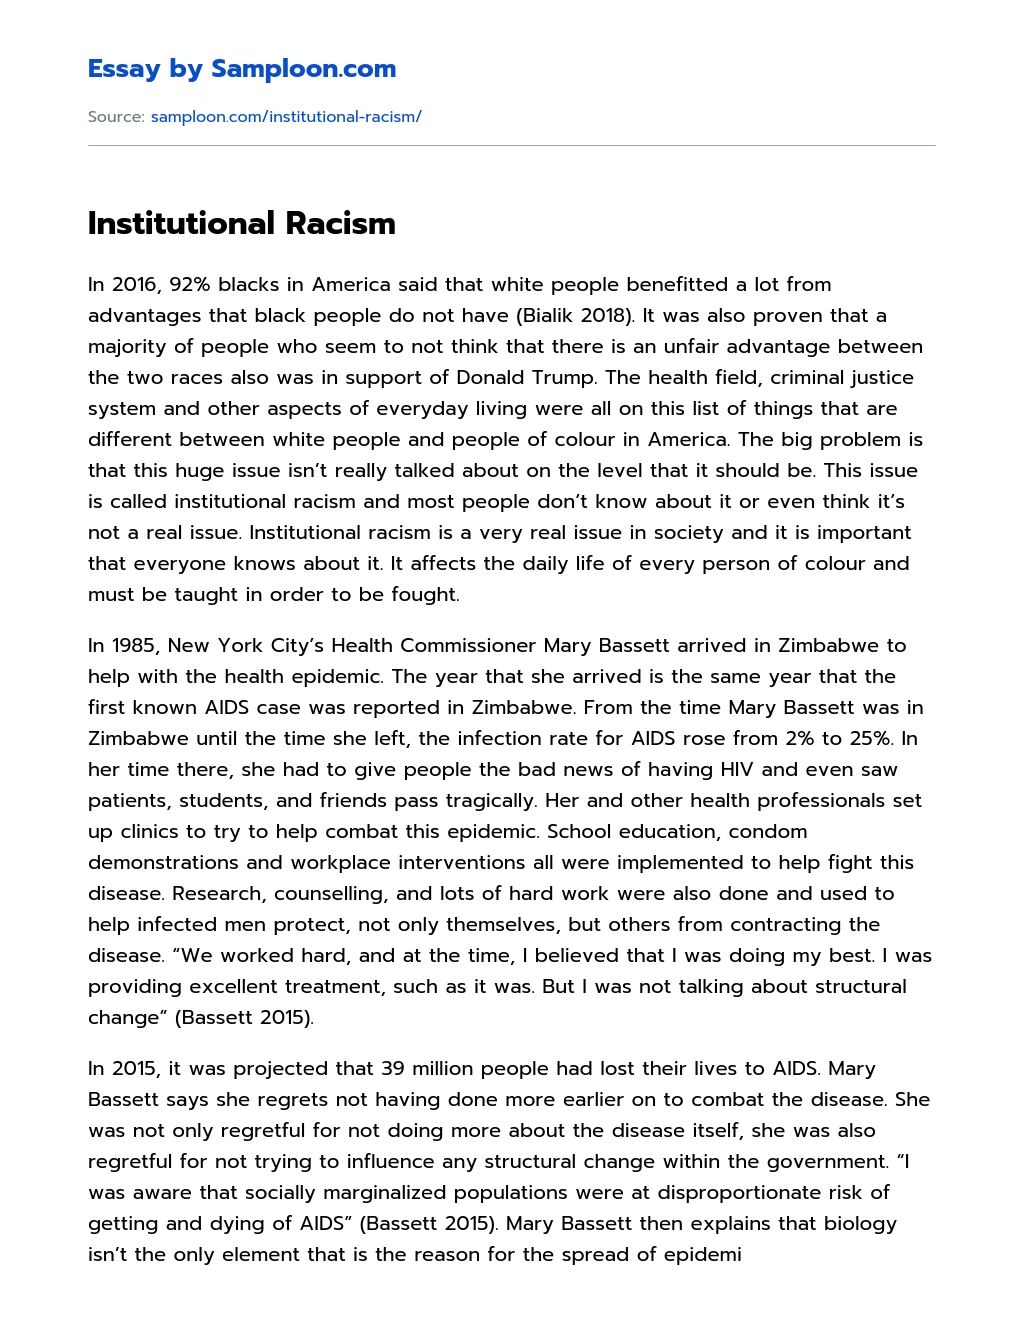 Institutional Racism essay